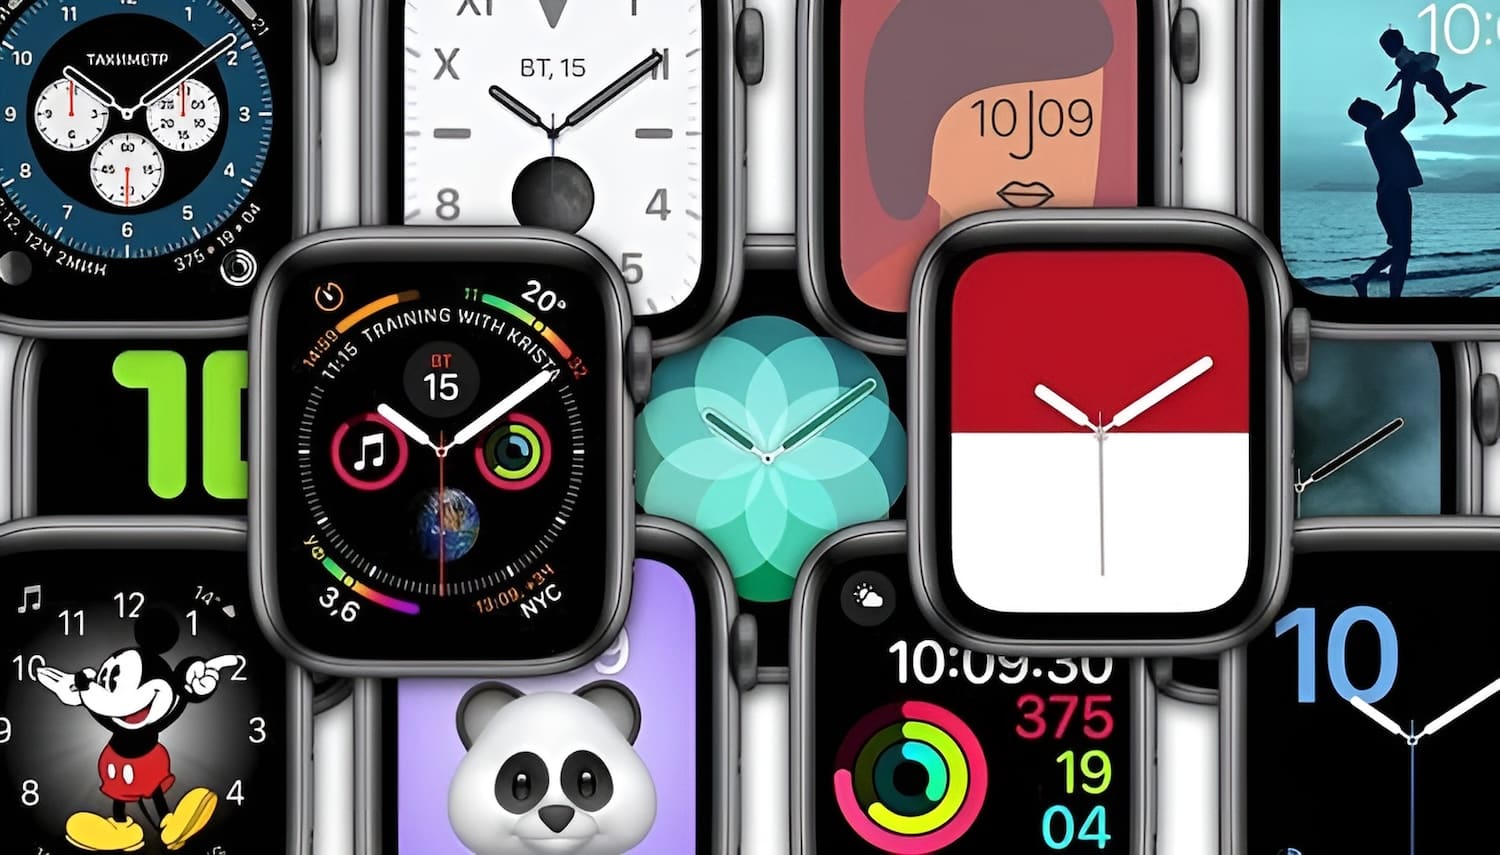 Почему на всех официальных фото часов Apple Watch установлено время 10:09?